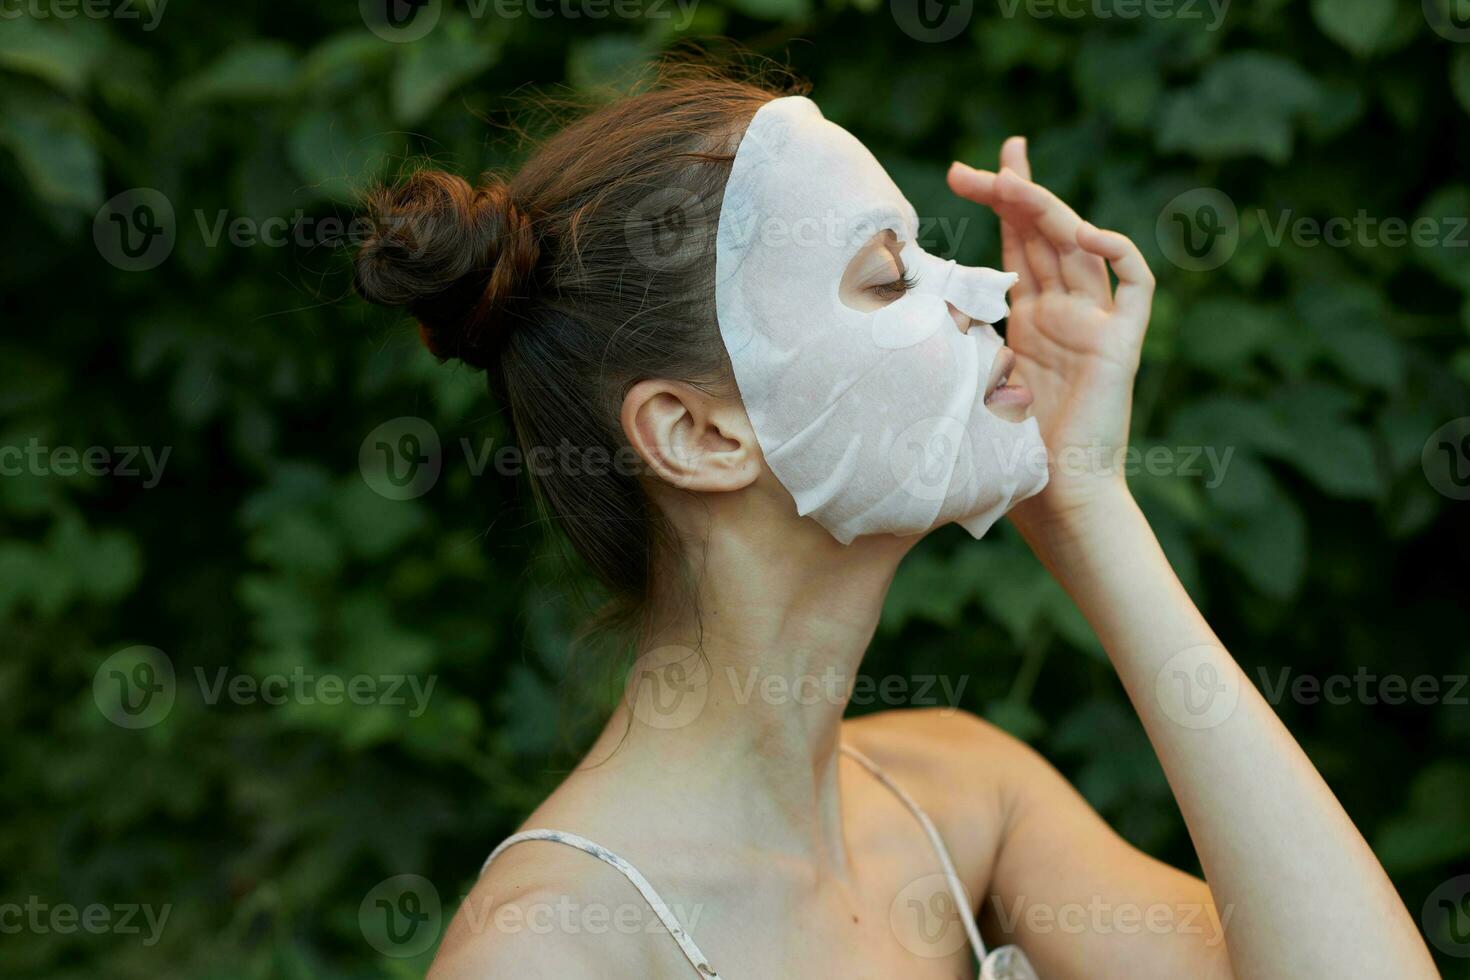 mooi hoor vrouw gezicht masker schoonheidsspecialiste groen struiken in de achtergrond detailopname kant visie. foto